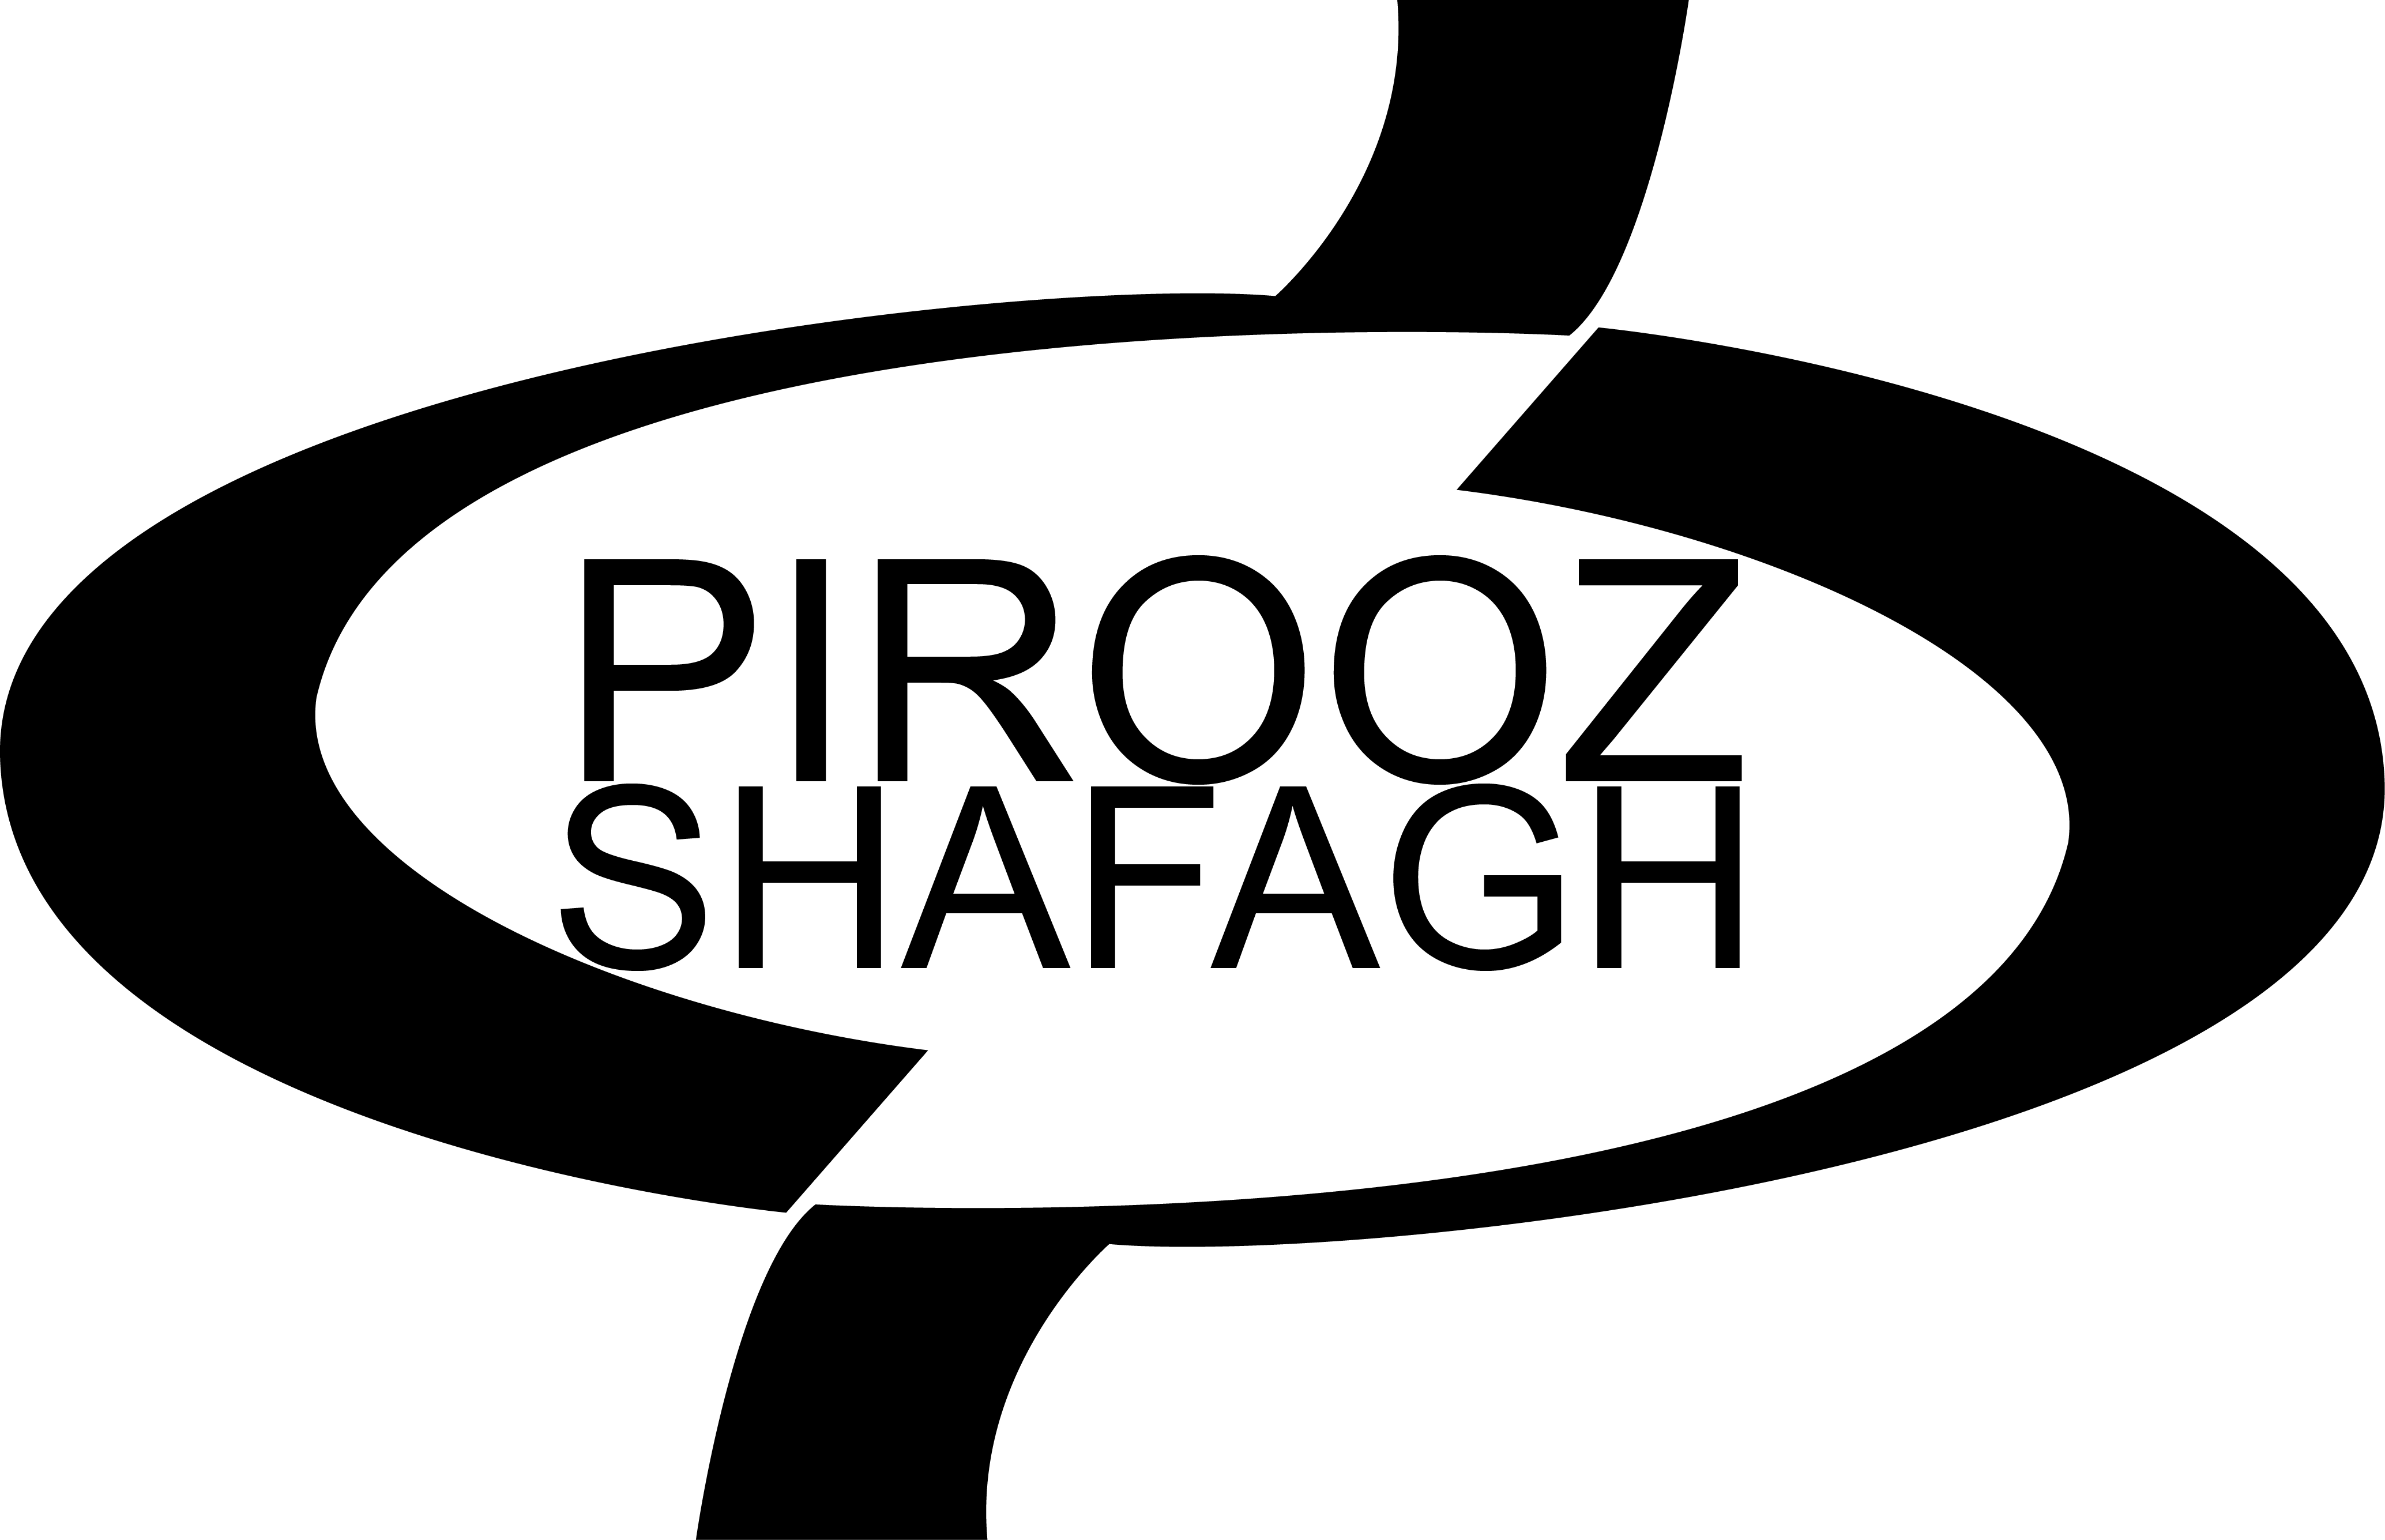 psp-logo